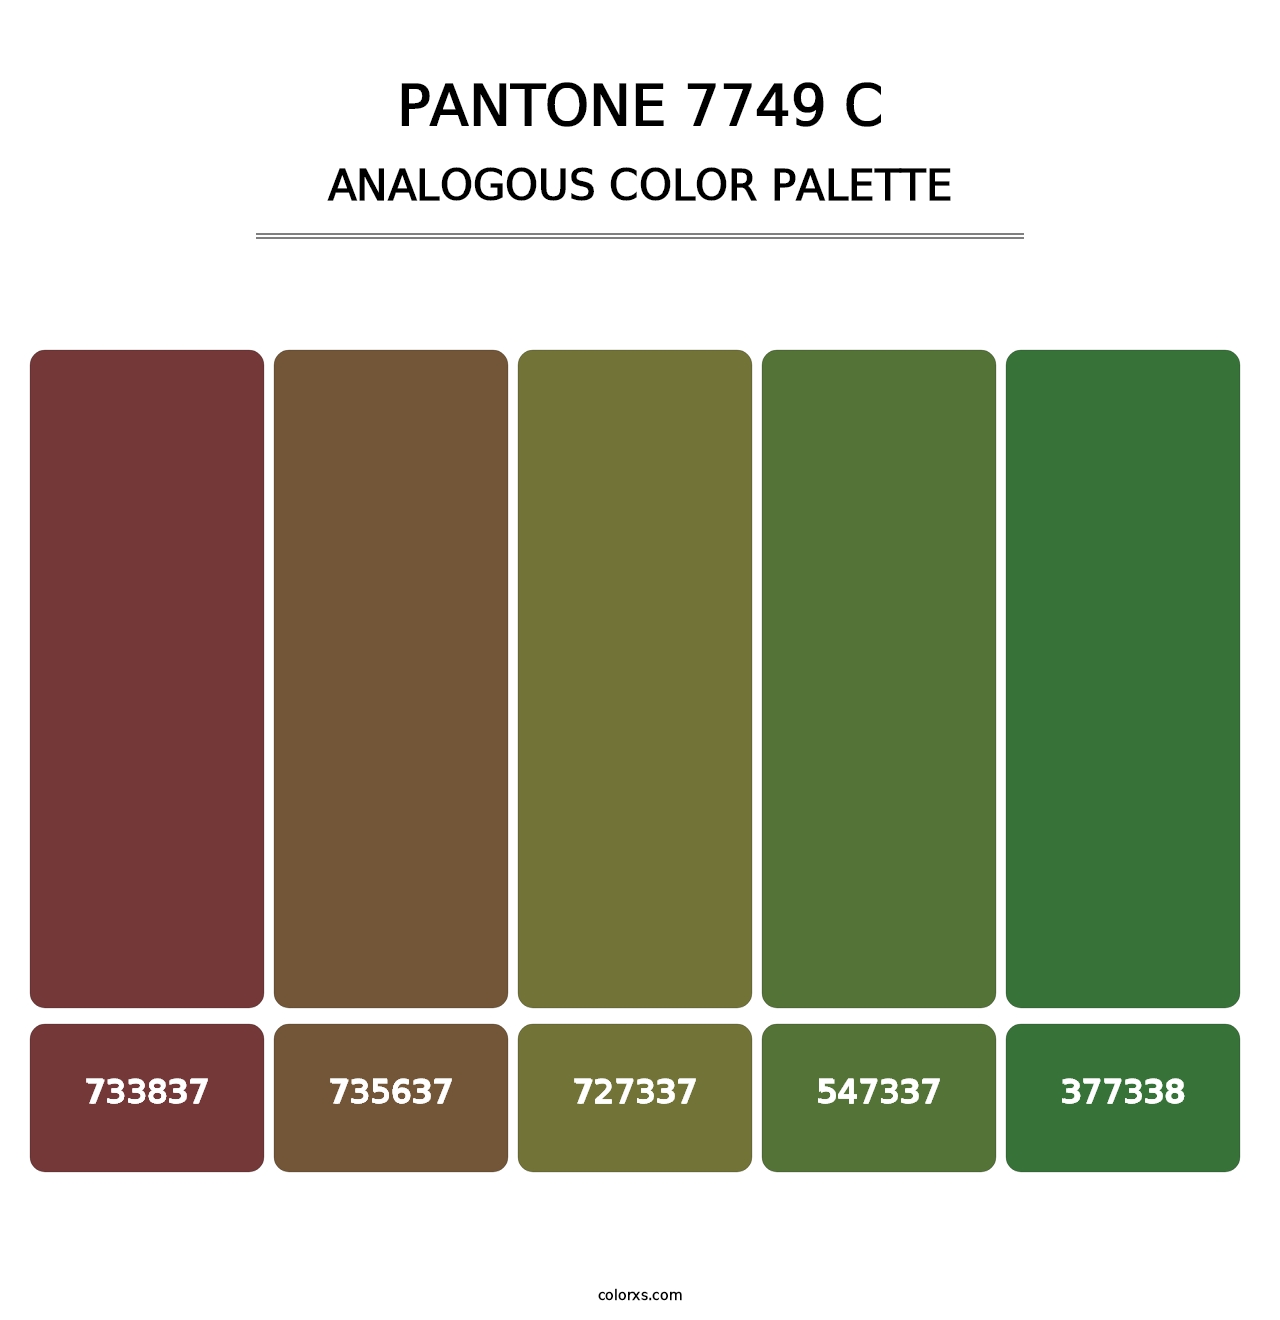 PANTONE 7749 C - Analogous Color Palette